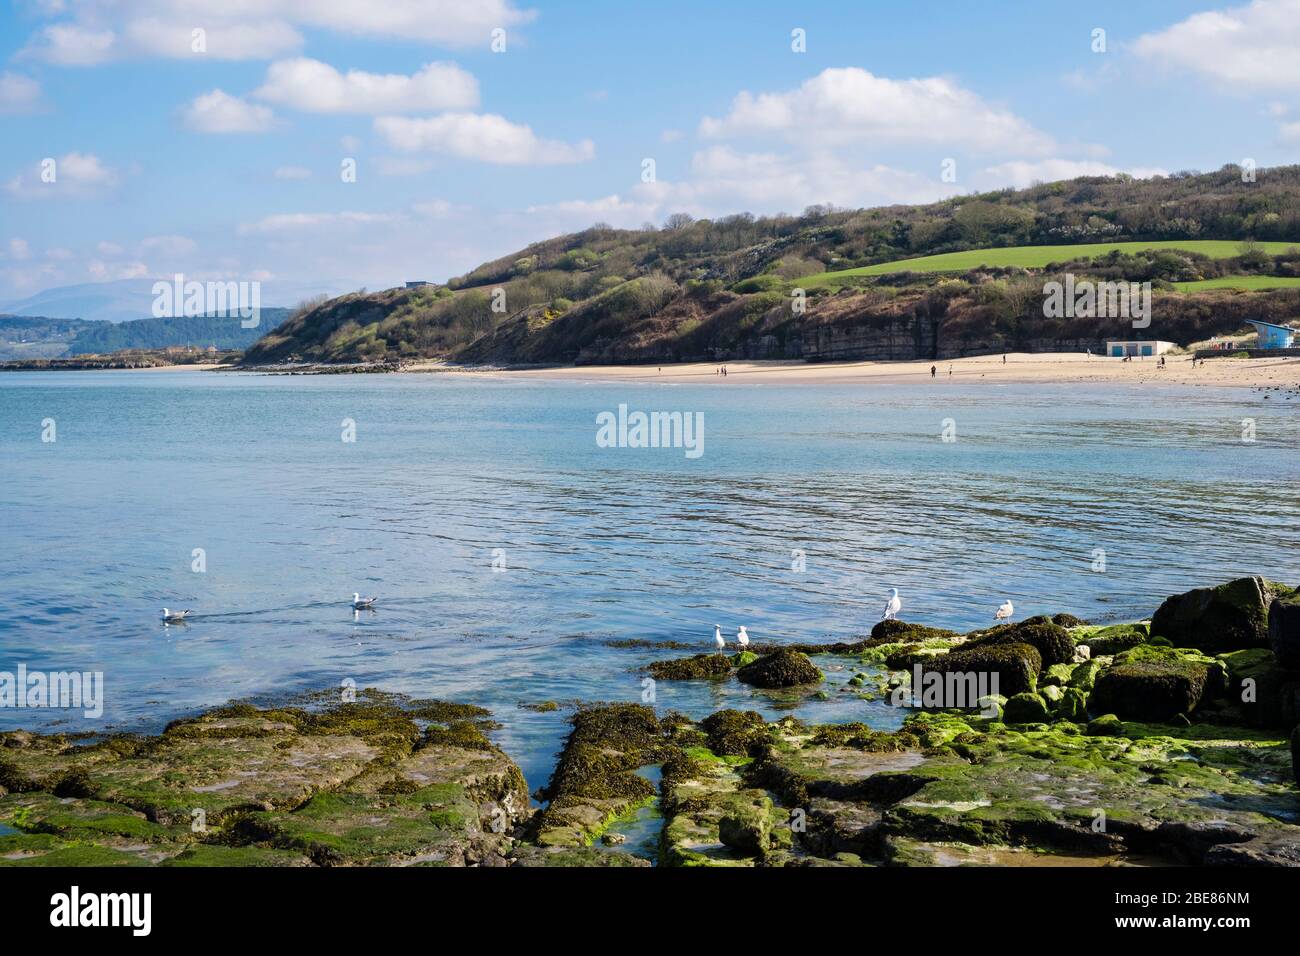 Goélands argentés sur les rochers et vue sur la mer bleue calme dans la baie à la plage tranquille à marée haute. Benllech, Île d'Anglesey, Pays de Galles du Nord, Royaume-Uni, Grande-Bretagne Banque D'Images